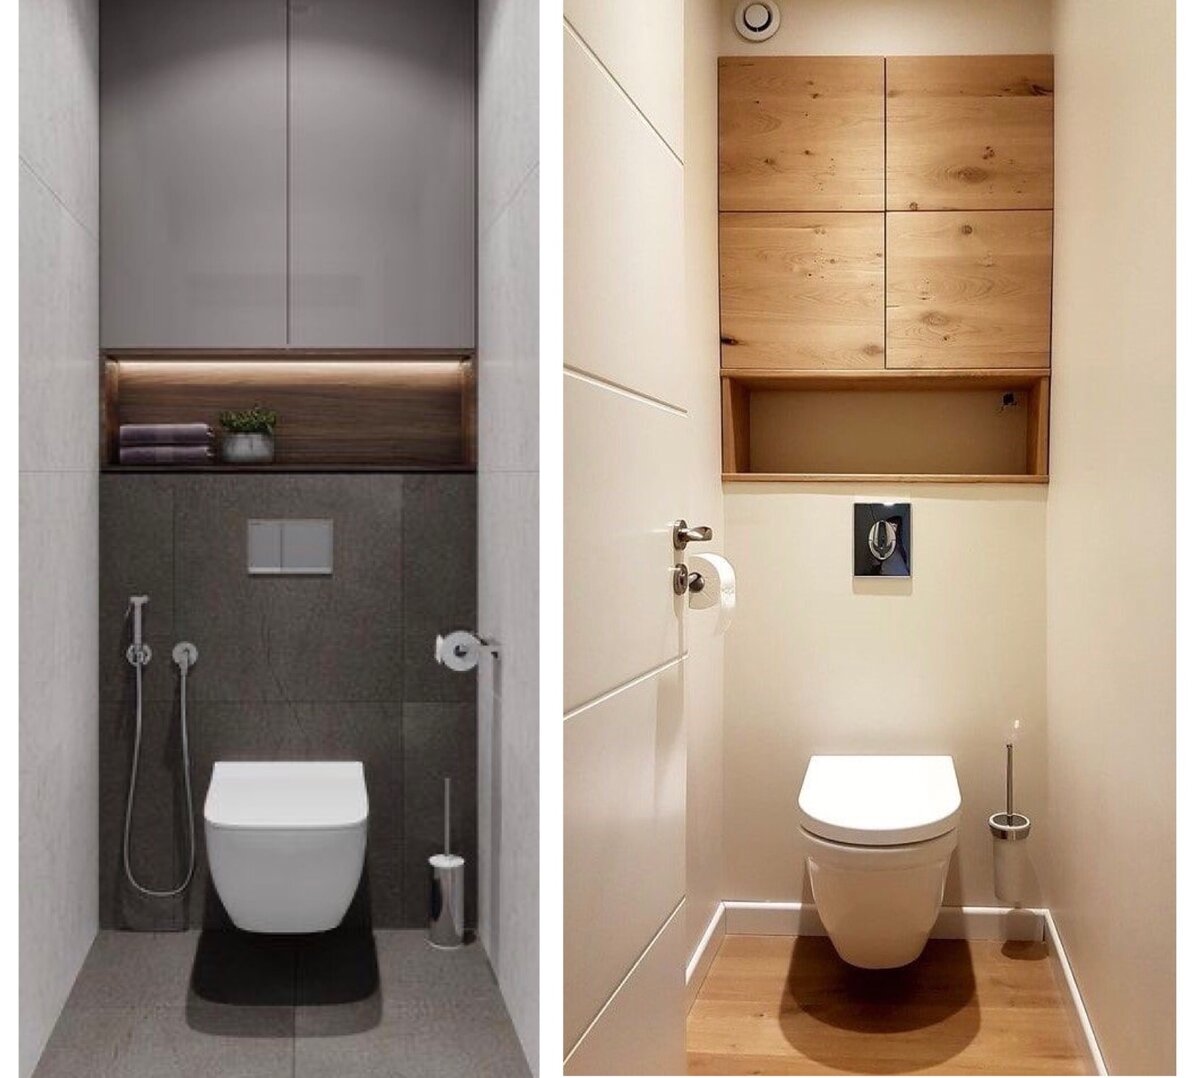 Современные туалеты с унитазами системой инсталляции. Идеи отделки и заполнения стен идеи для дома,интерьер и дизайн